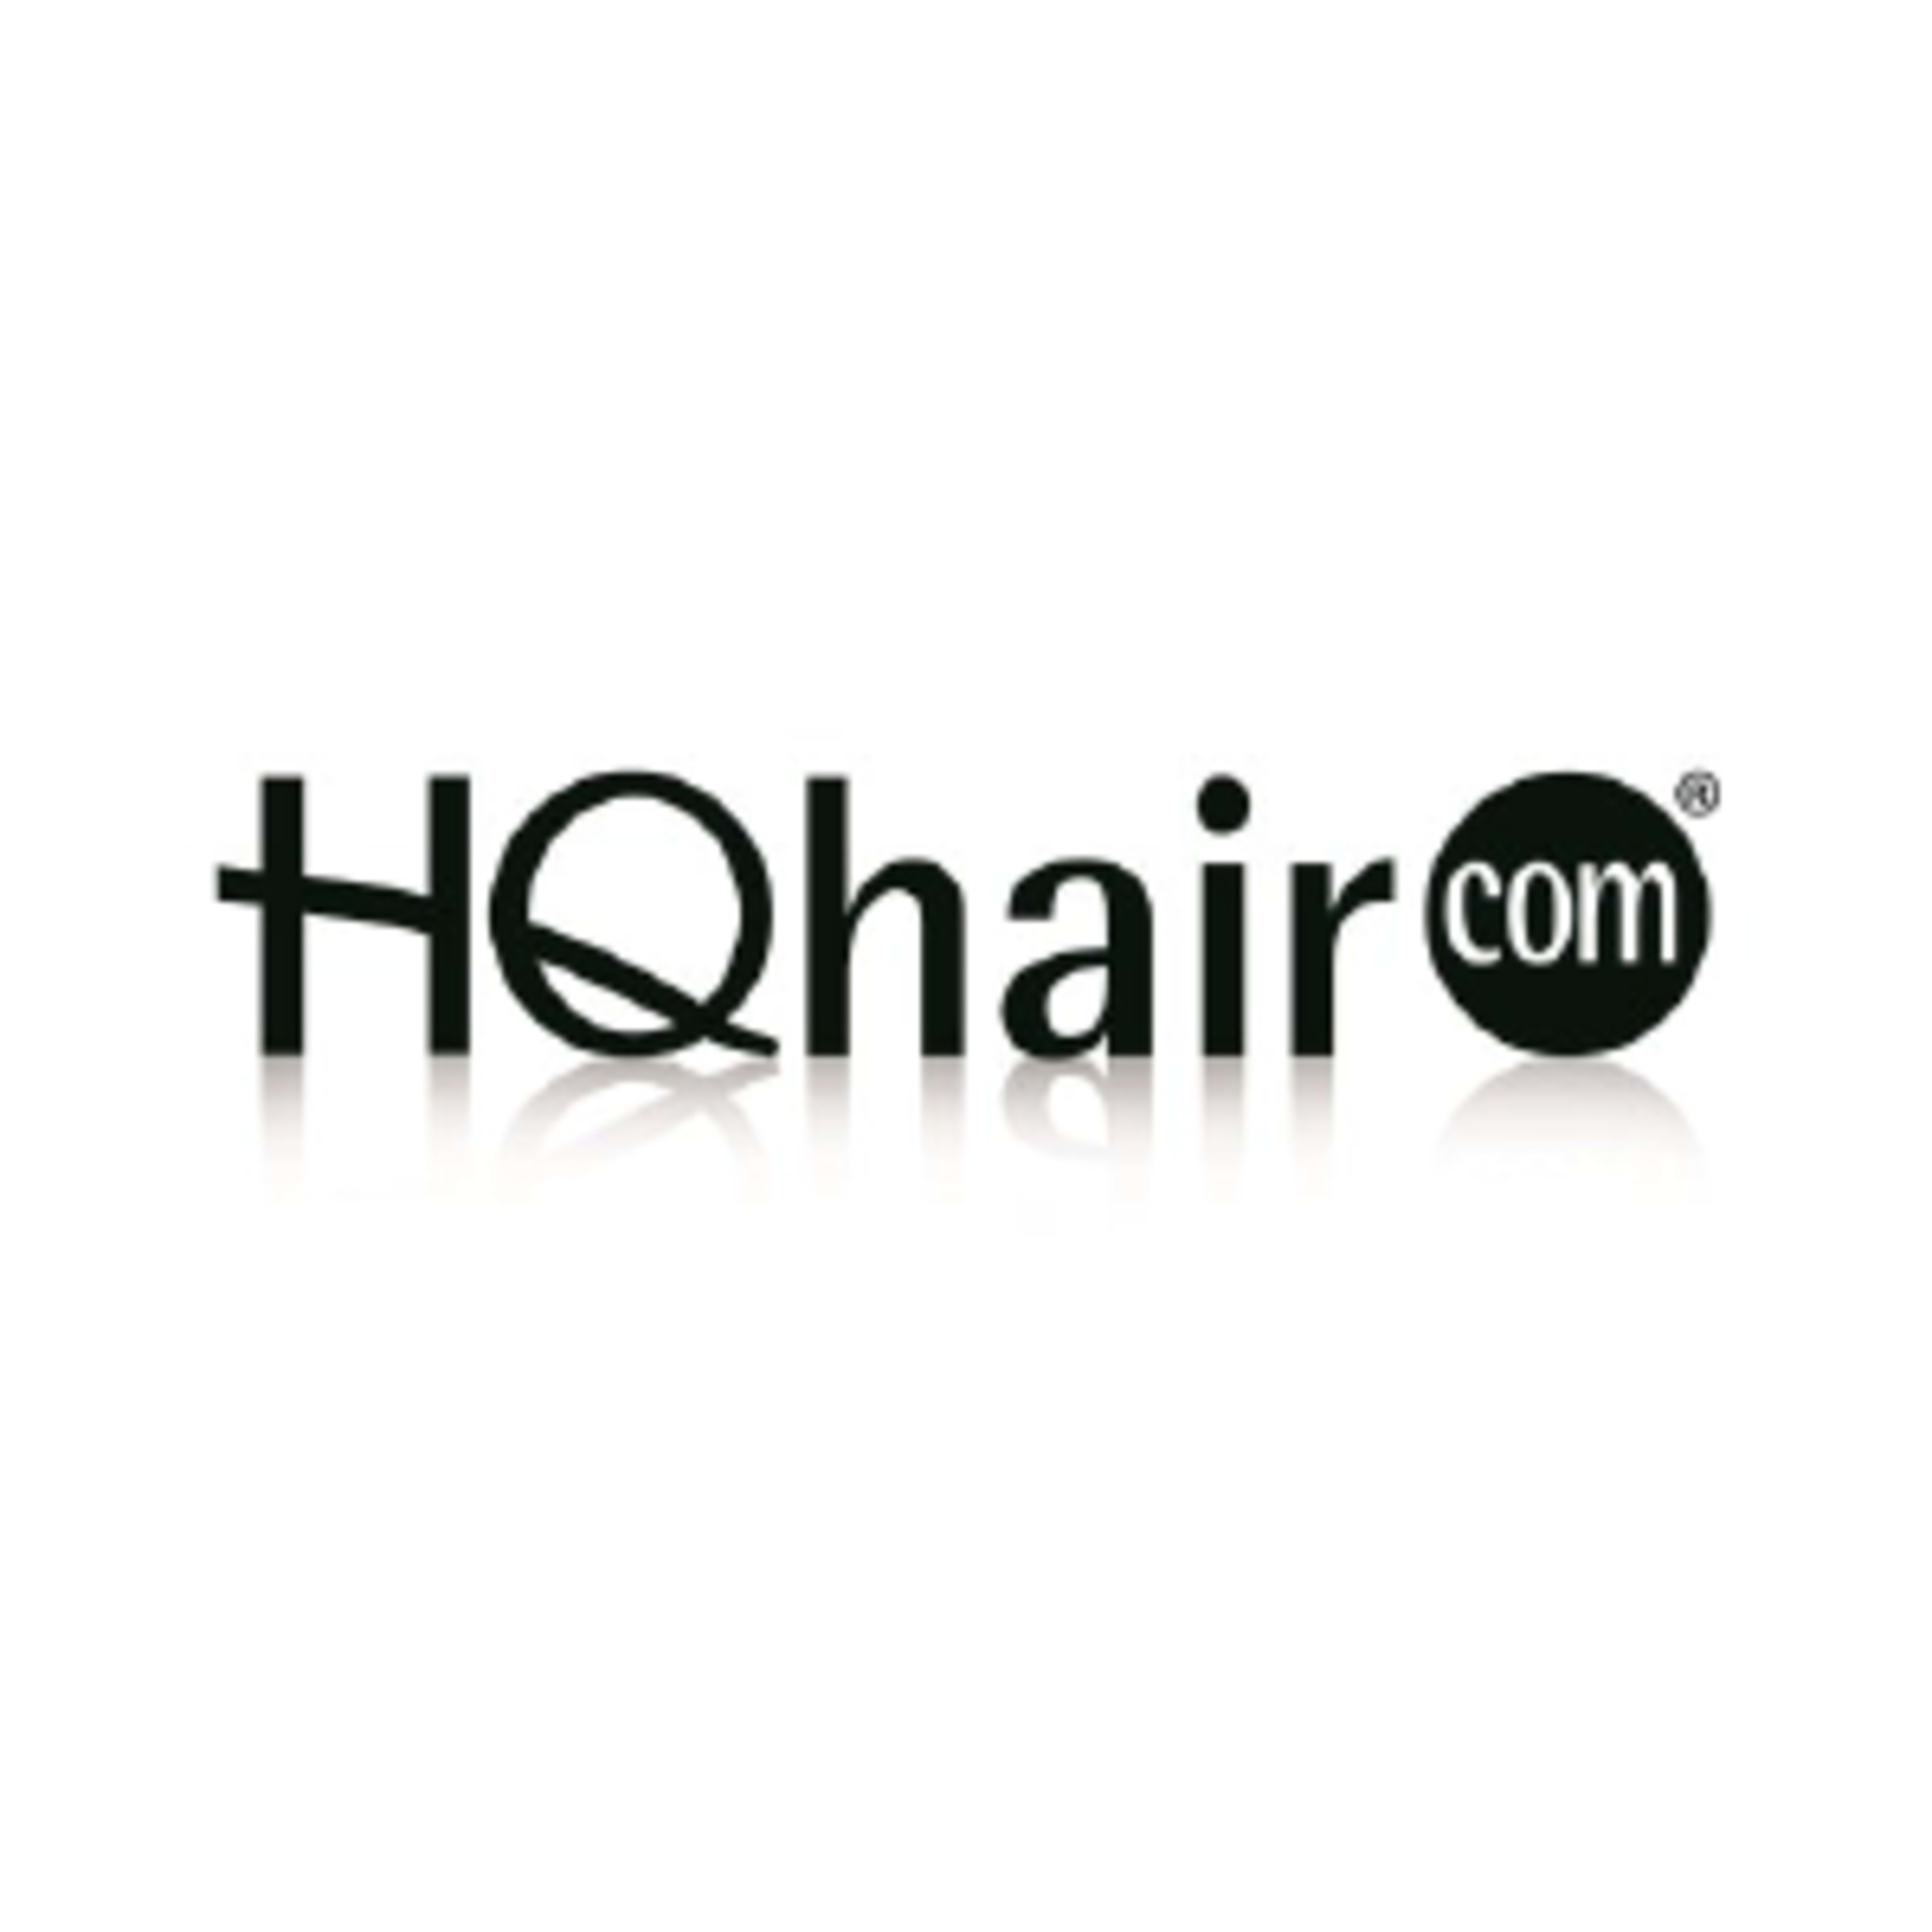 HQhair.com Code